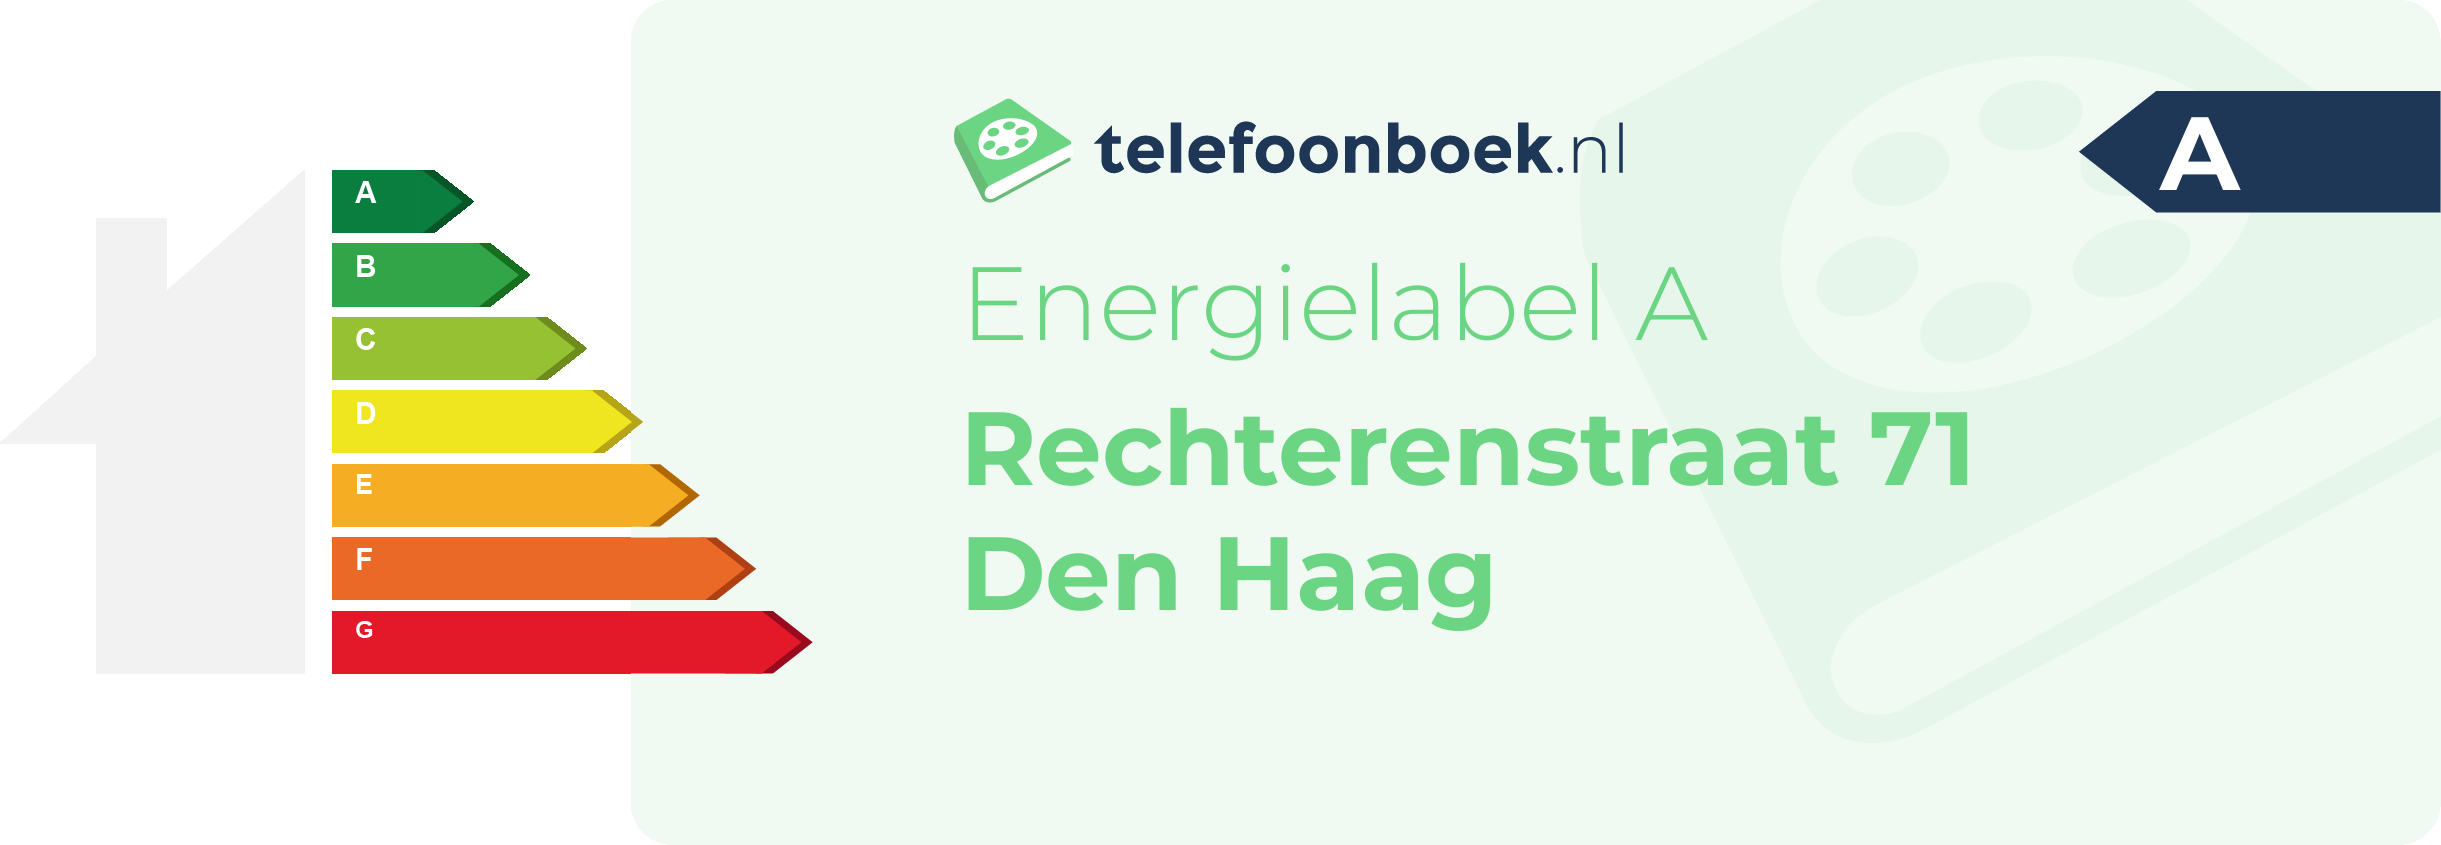 Energielabel Rechterenstraat 71 Den Haag